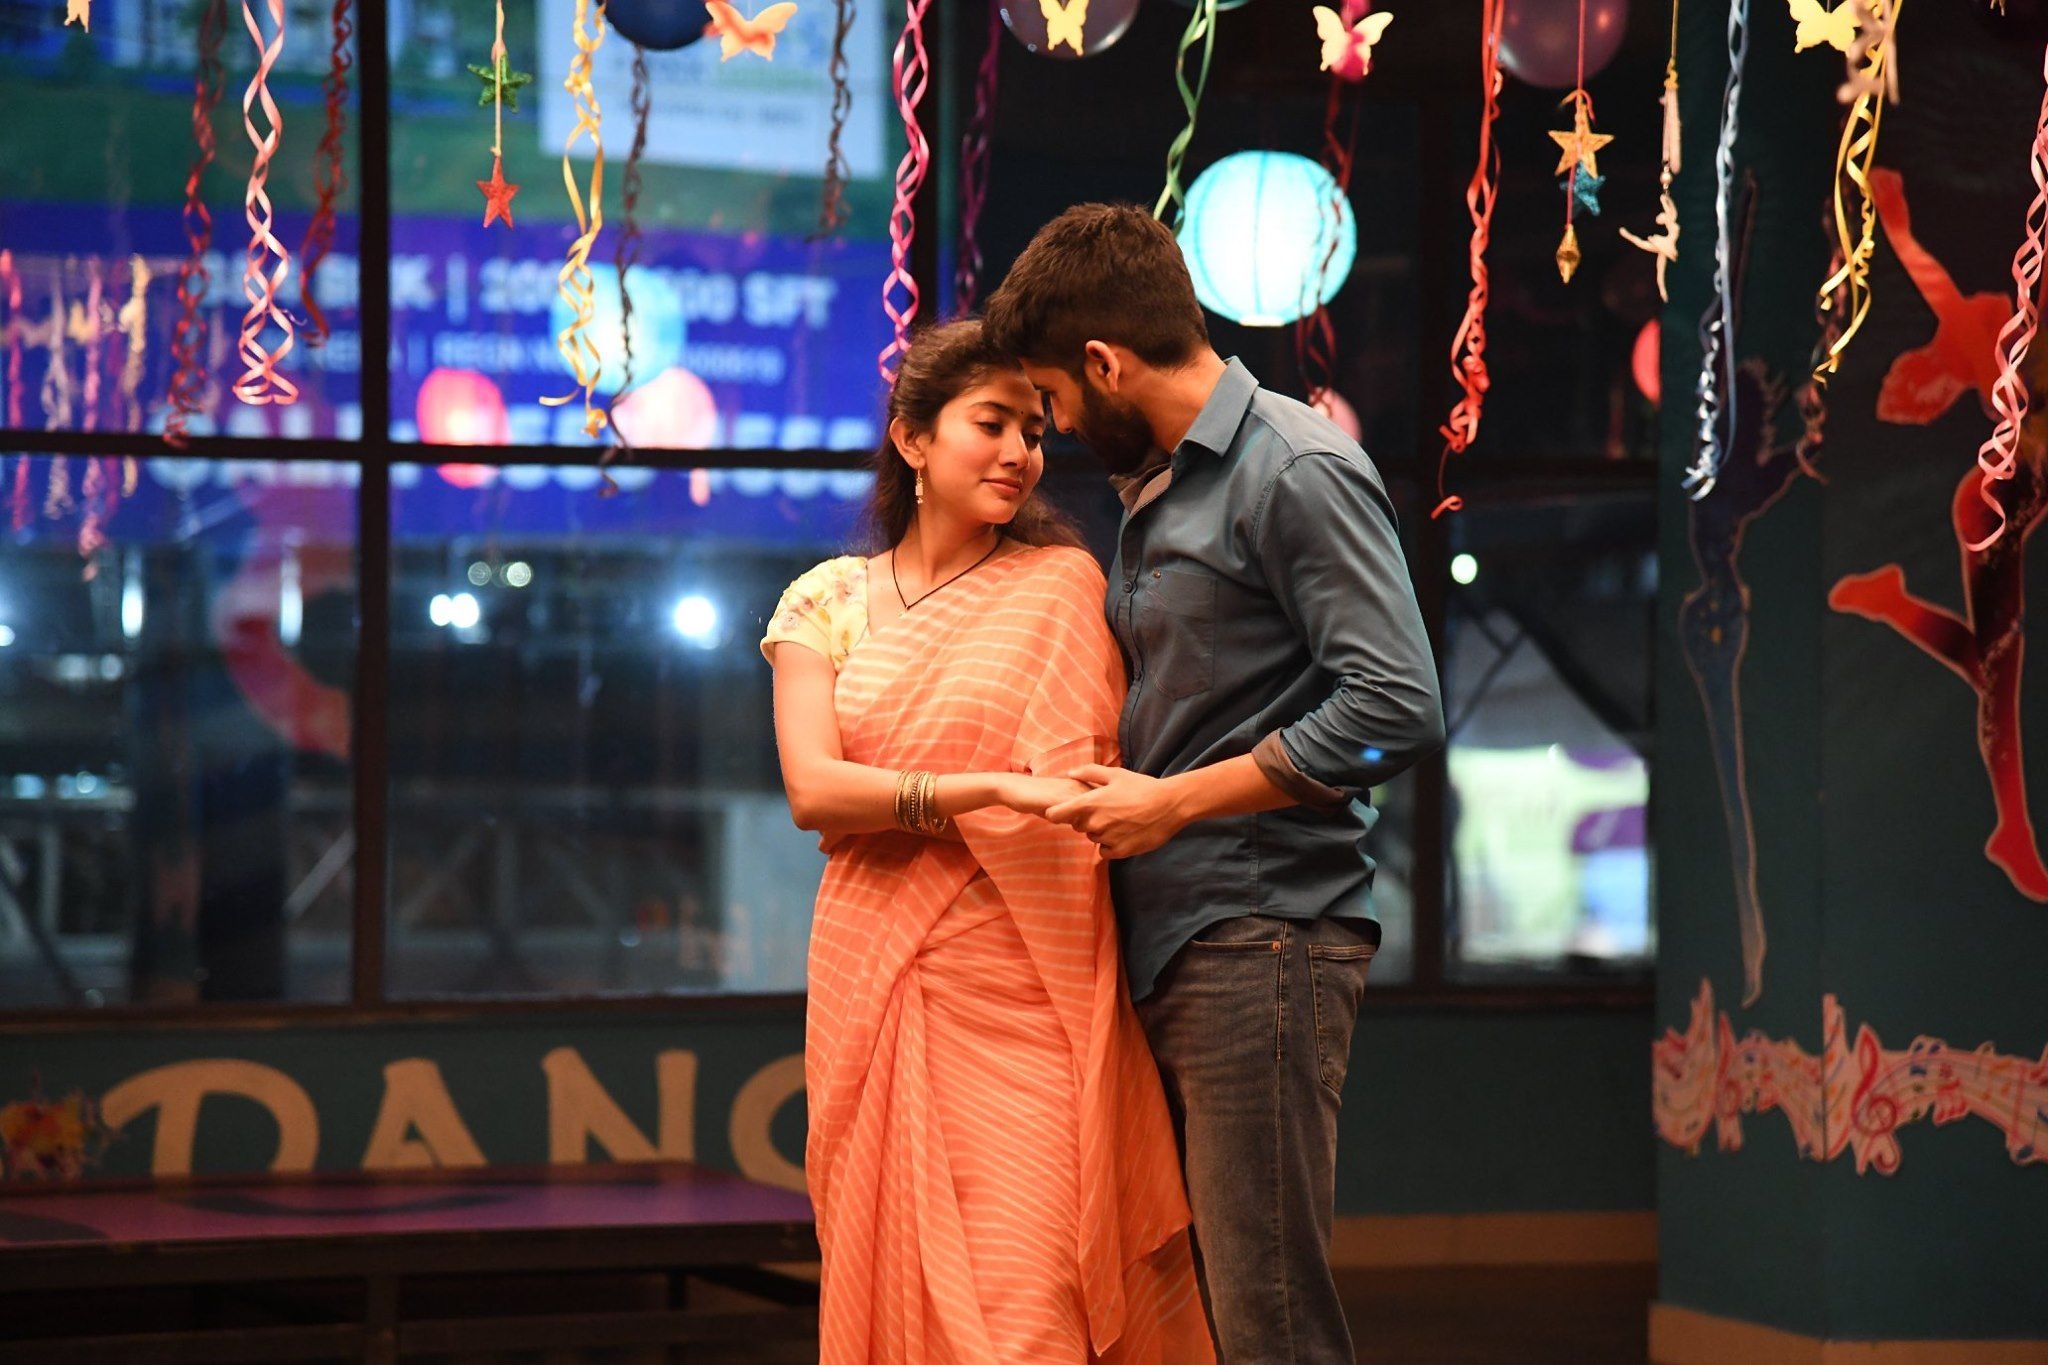 NagaChaitanya and SaiPallavi LuV Images From Upcoming Movie Love Story